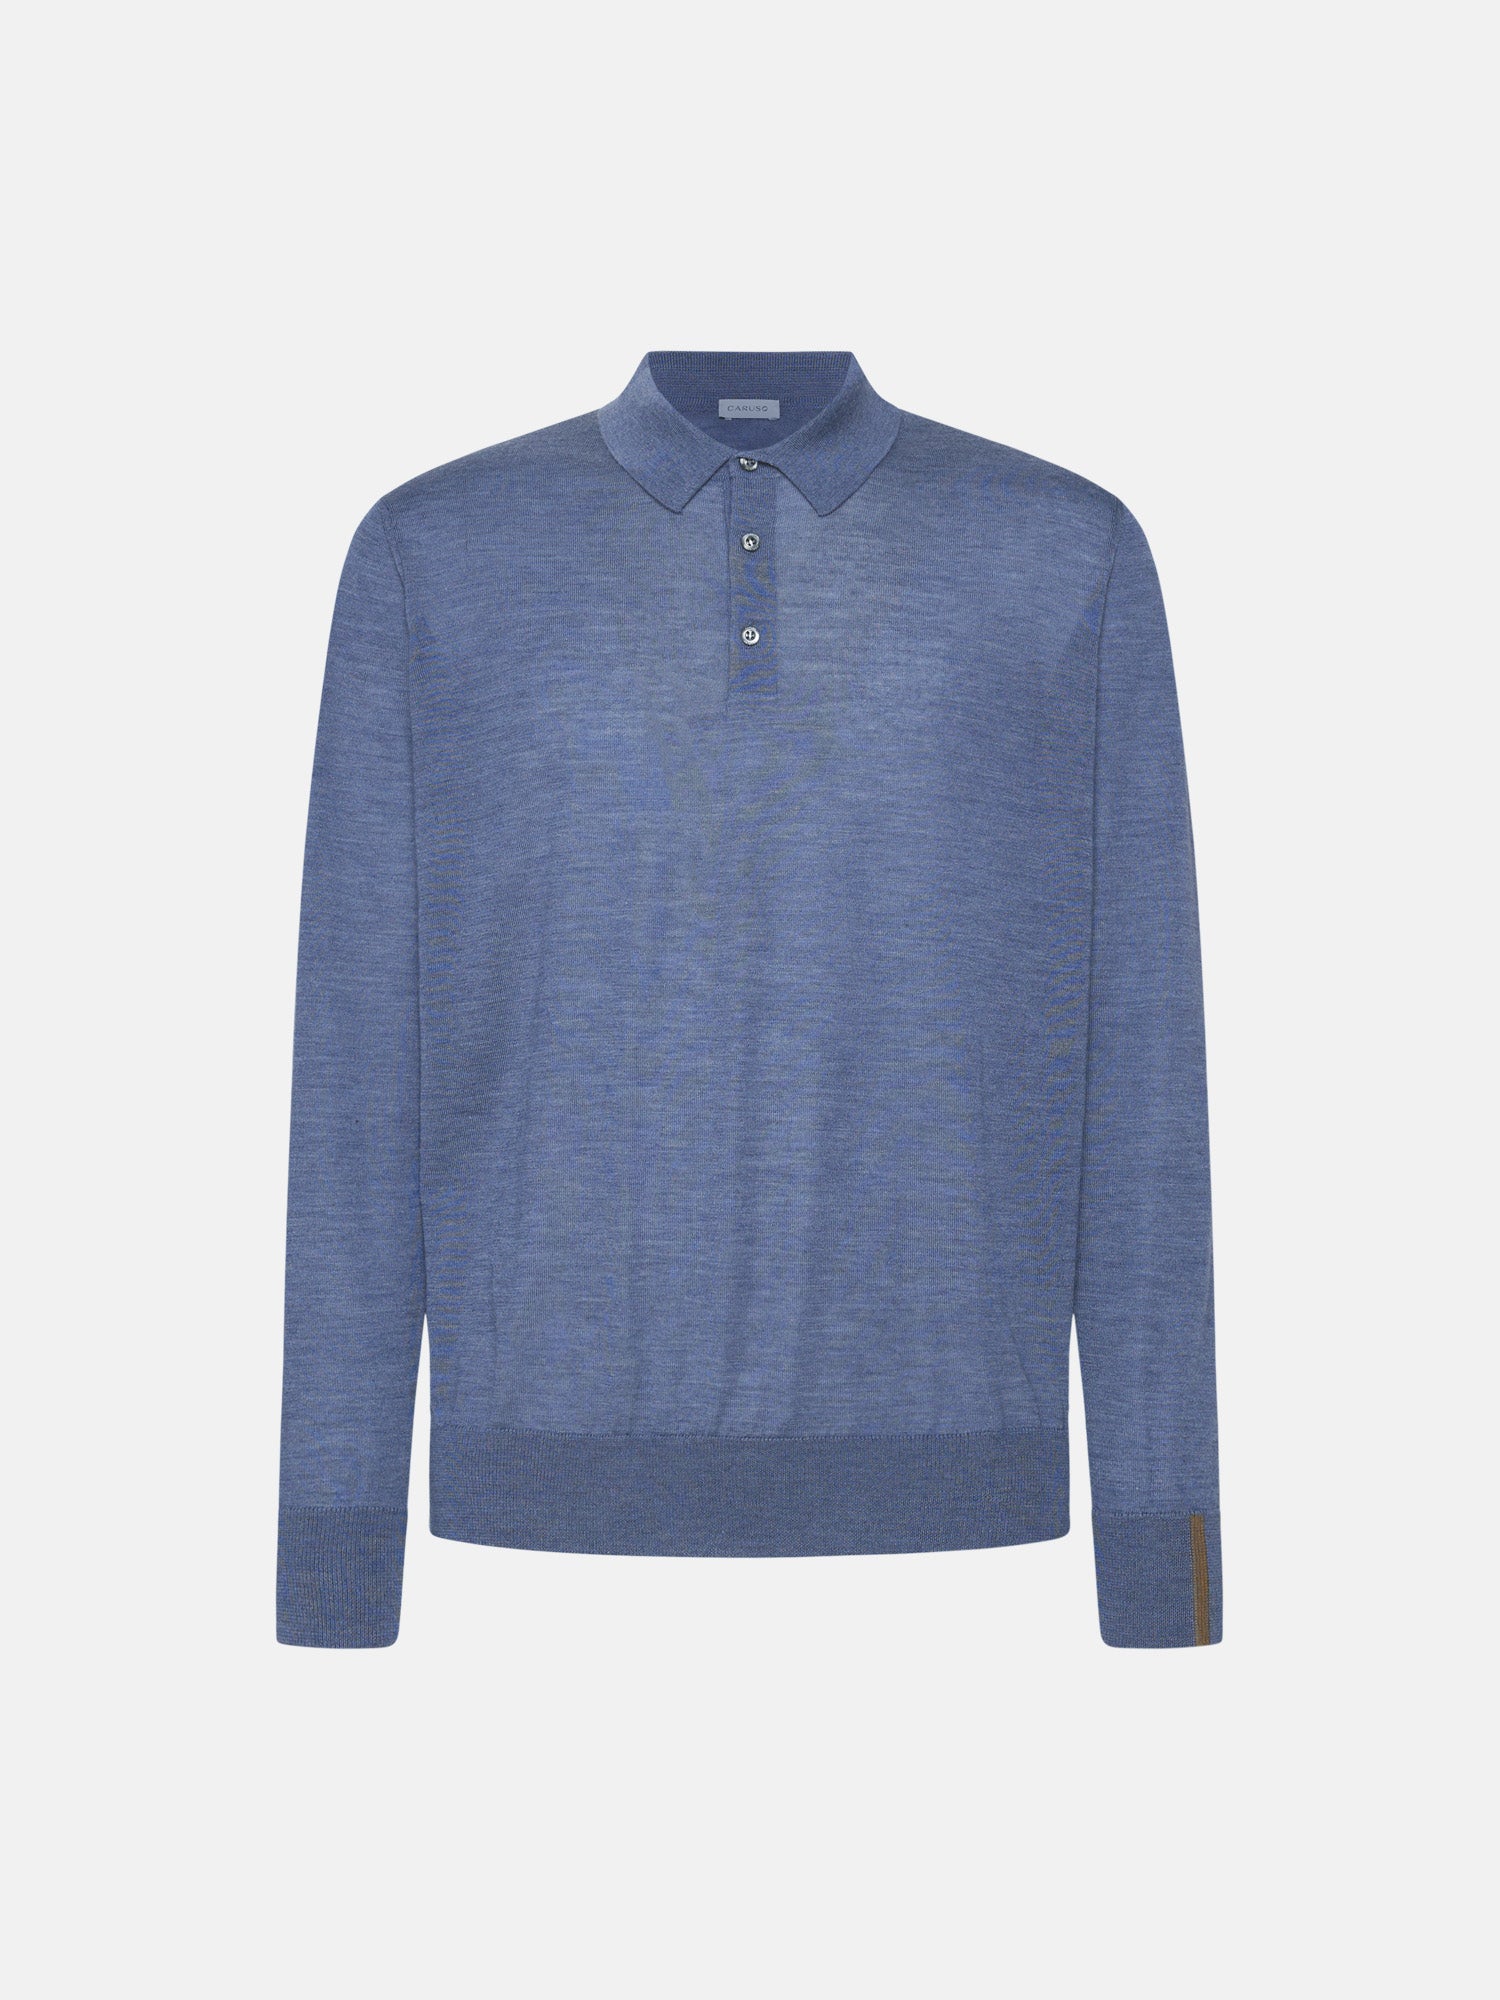 Caruso Menswear Abbigliamento Uomo Polo a maniche lunghe in lana, seta e cashmere blu chiaro still